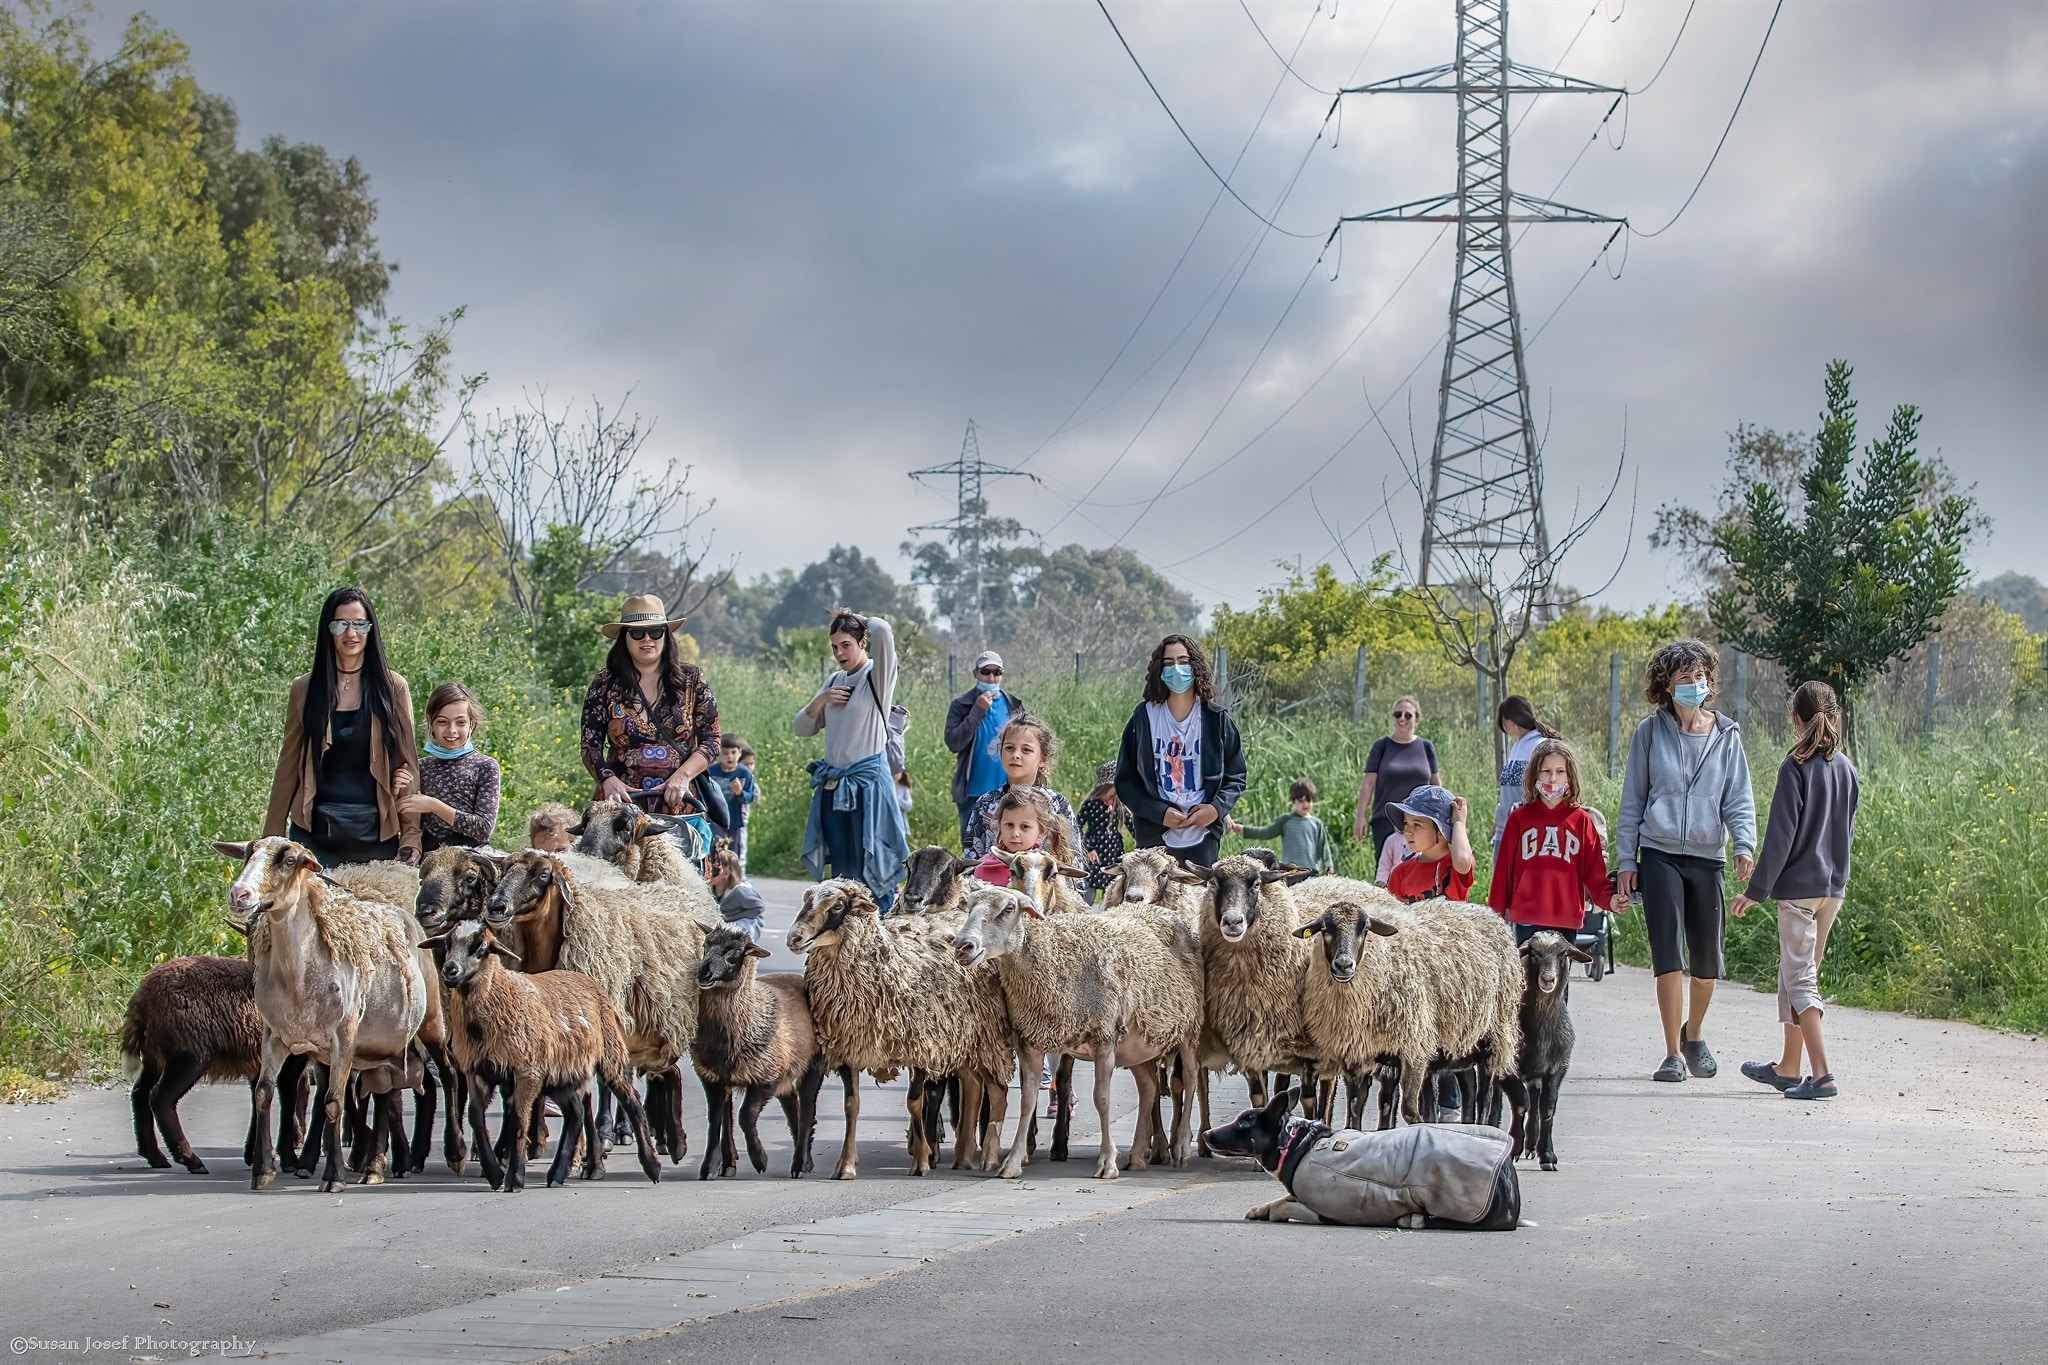 עדר כבשים וקבוצה על רקע הפארק ומגדל חשמל